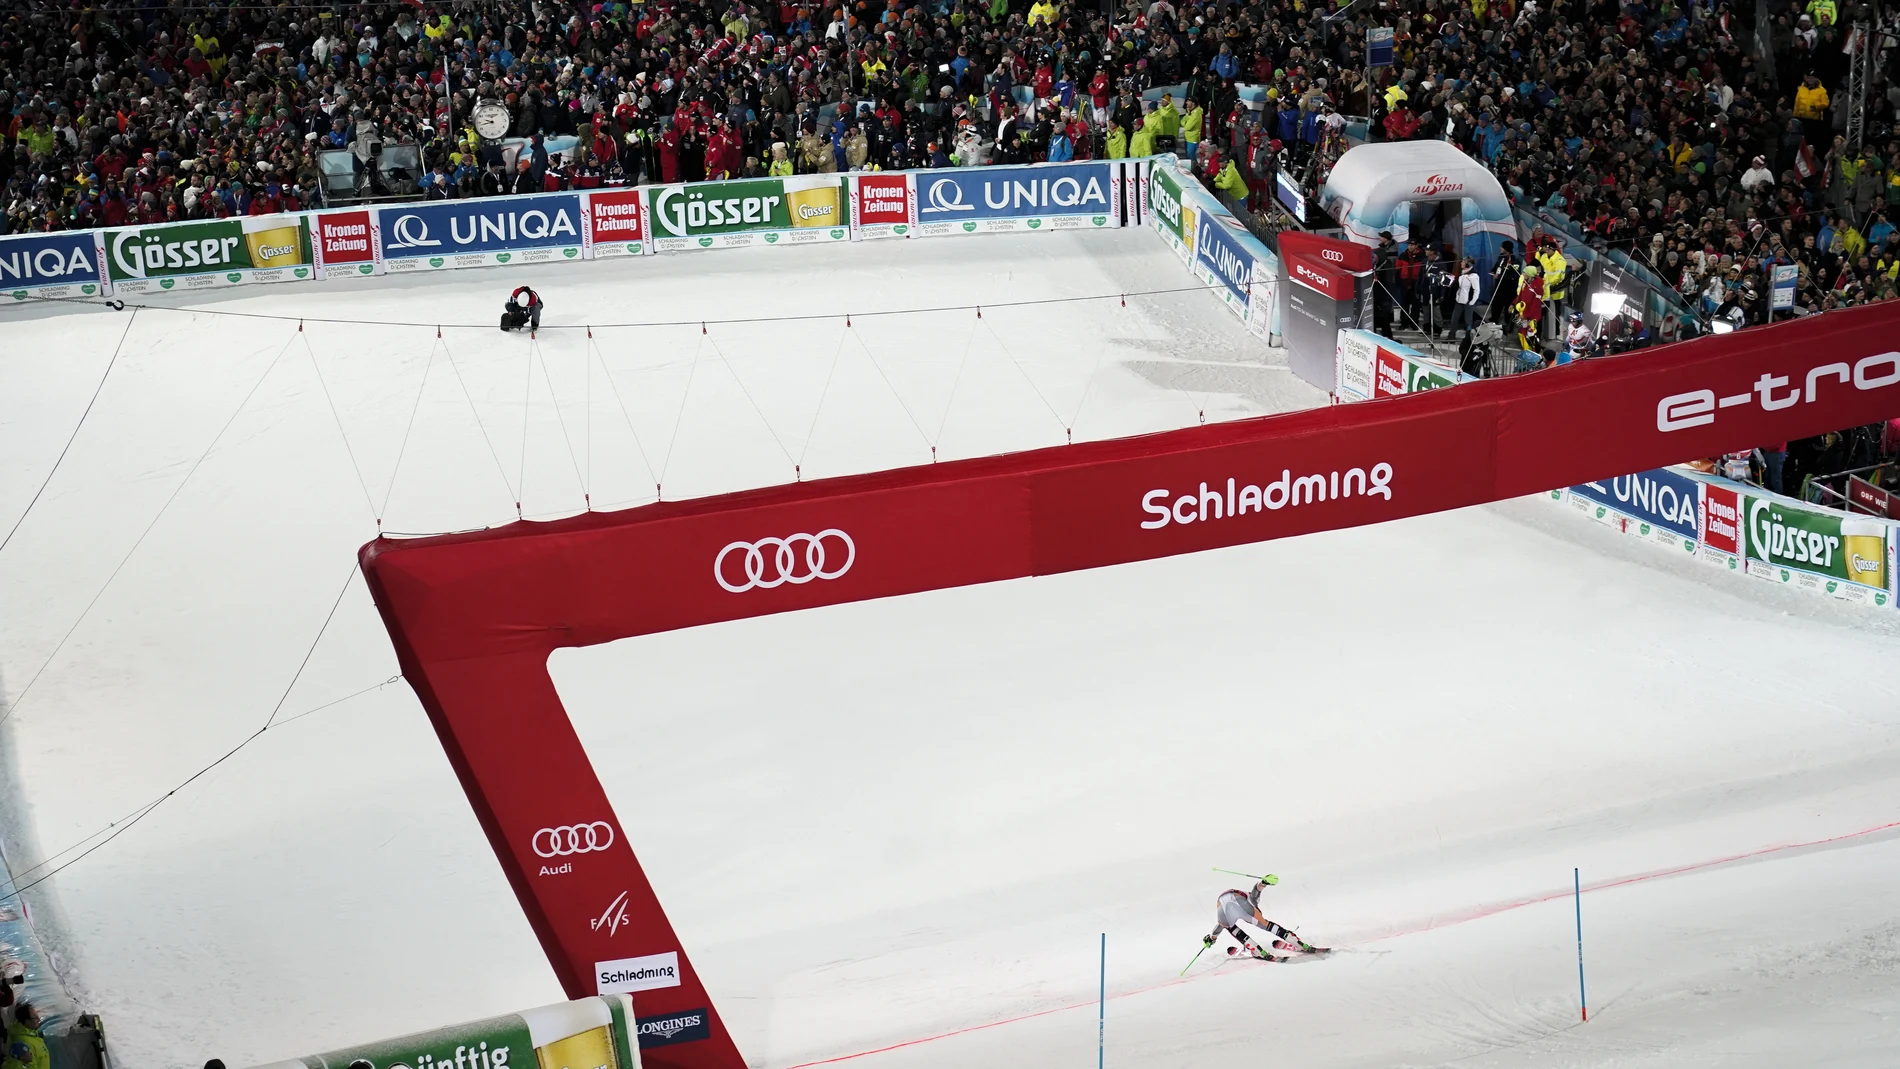 El noruego Henrik Kristoffersen cruza la línea de meta para ganar la carrera de slalom masculino, en Schladming, Austria